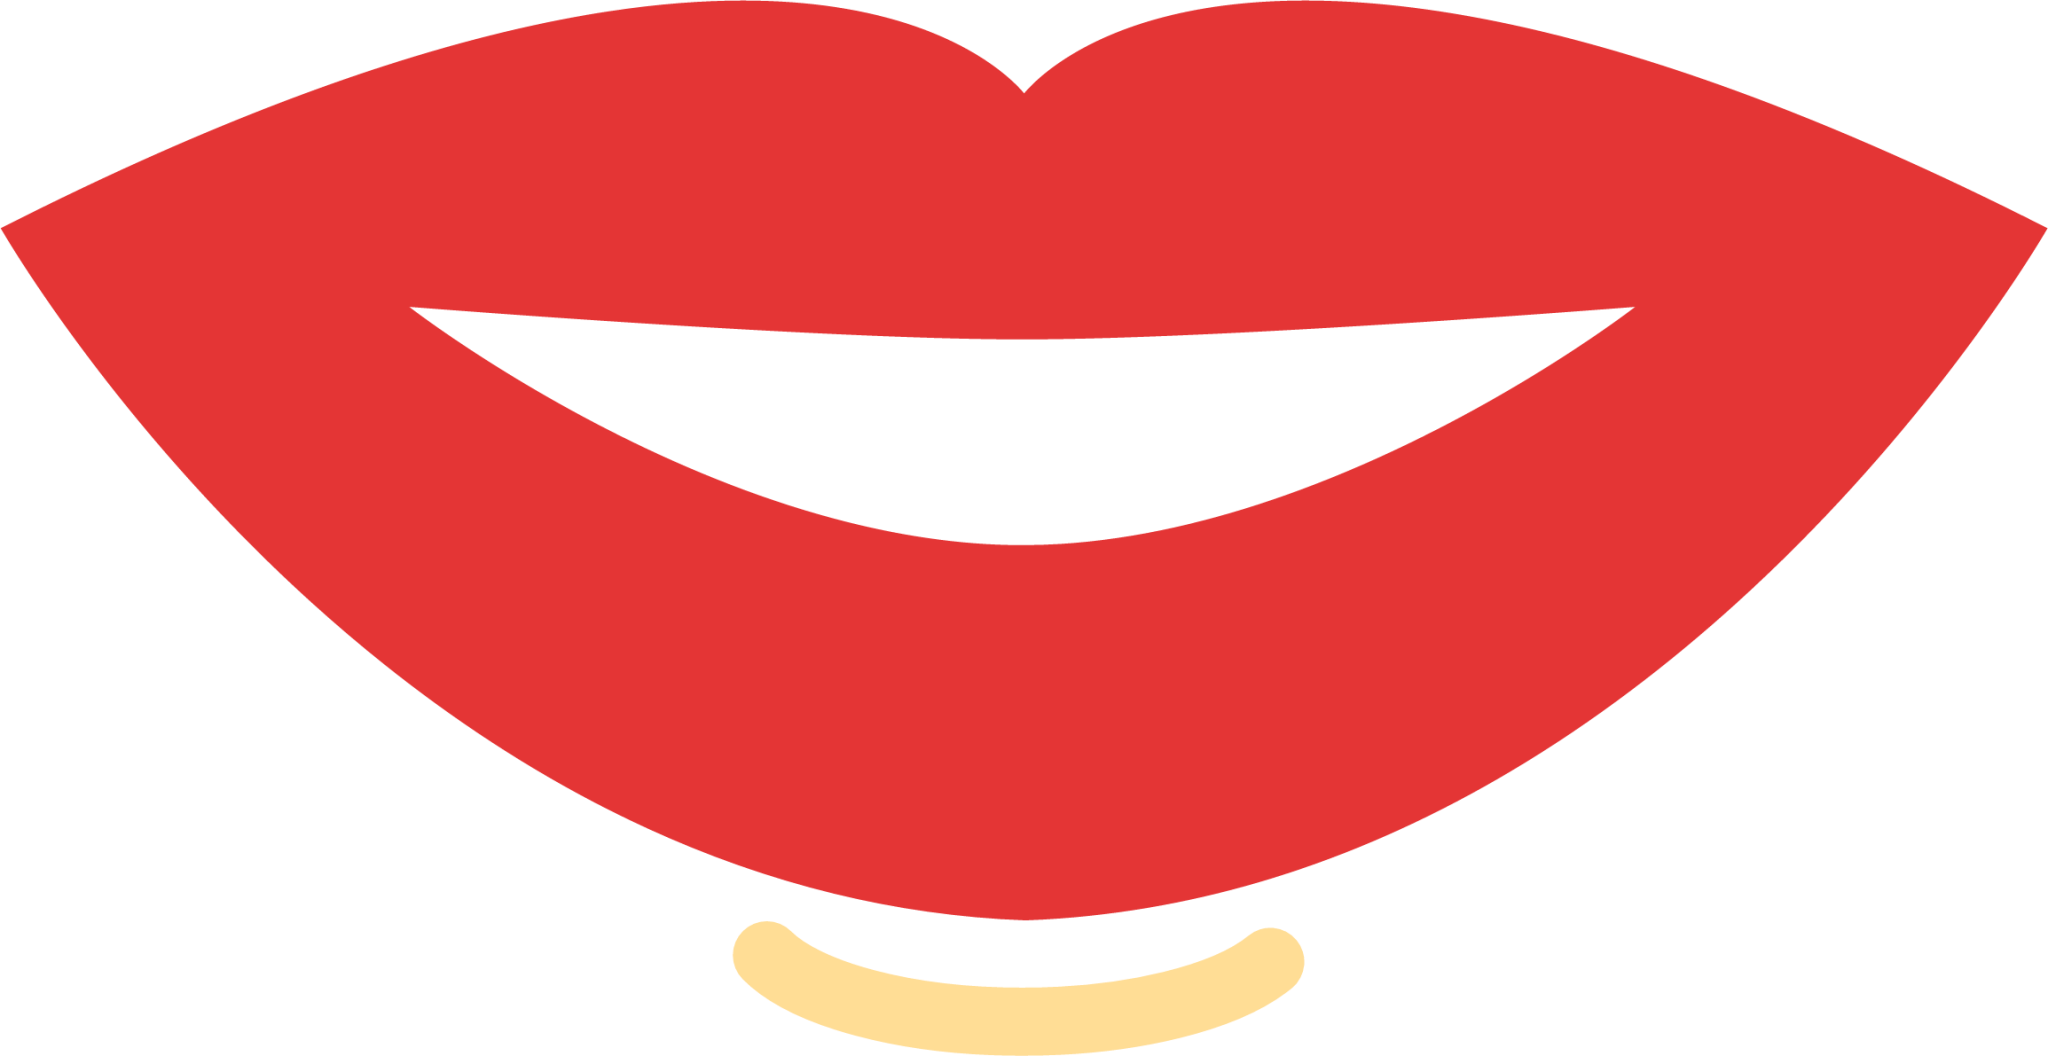 mouth icon